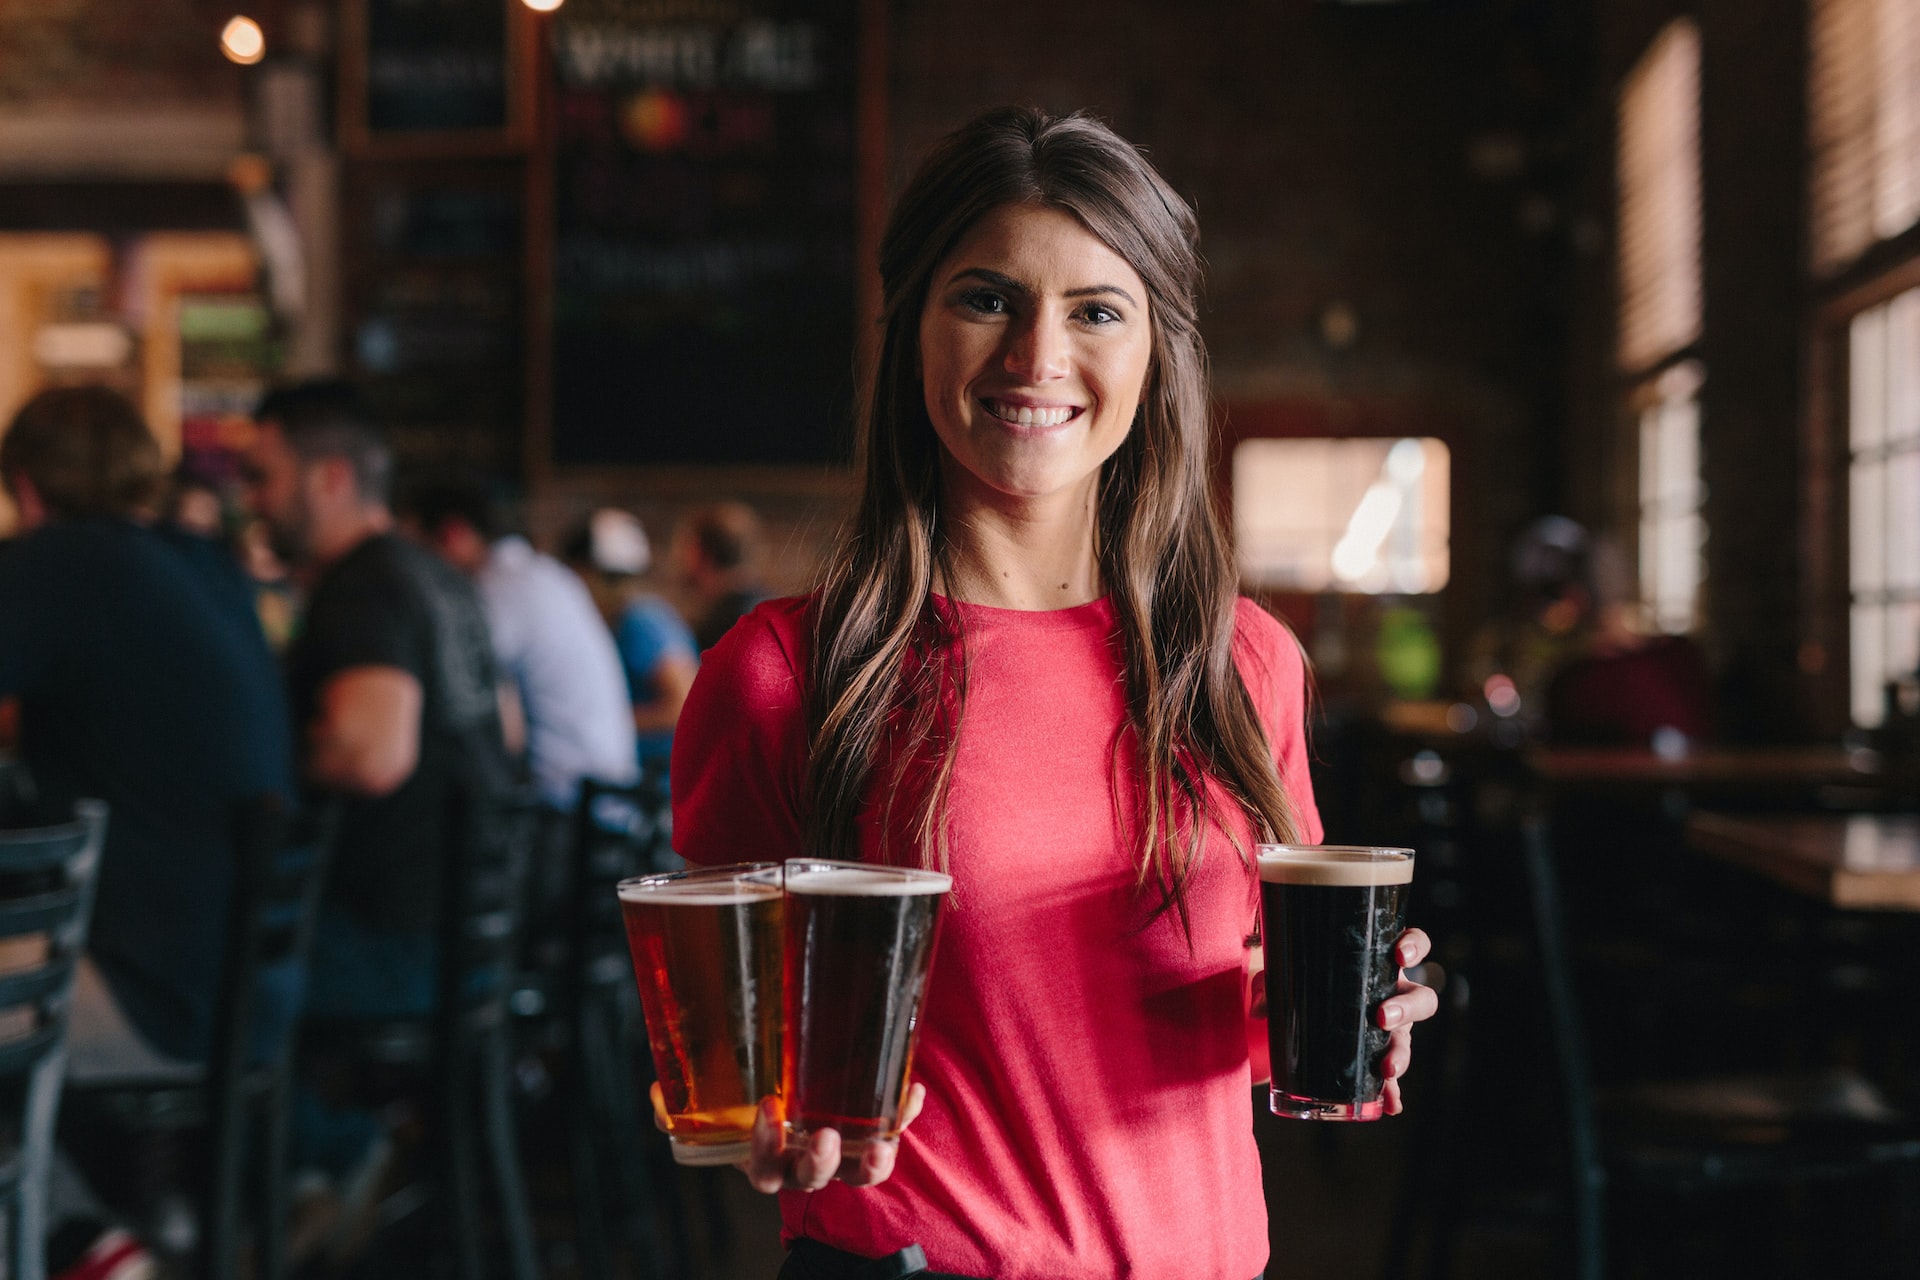 A woman serving beer at a pub.